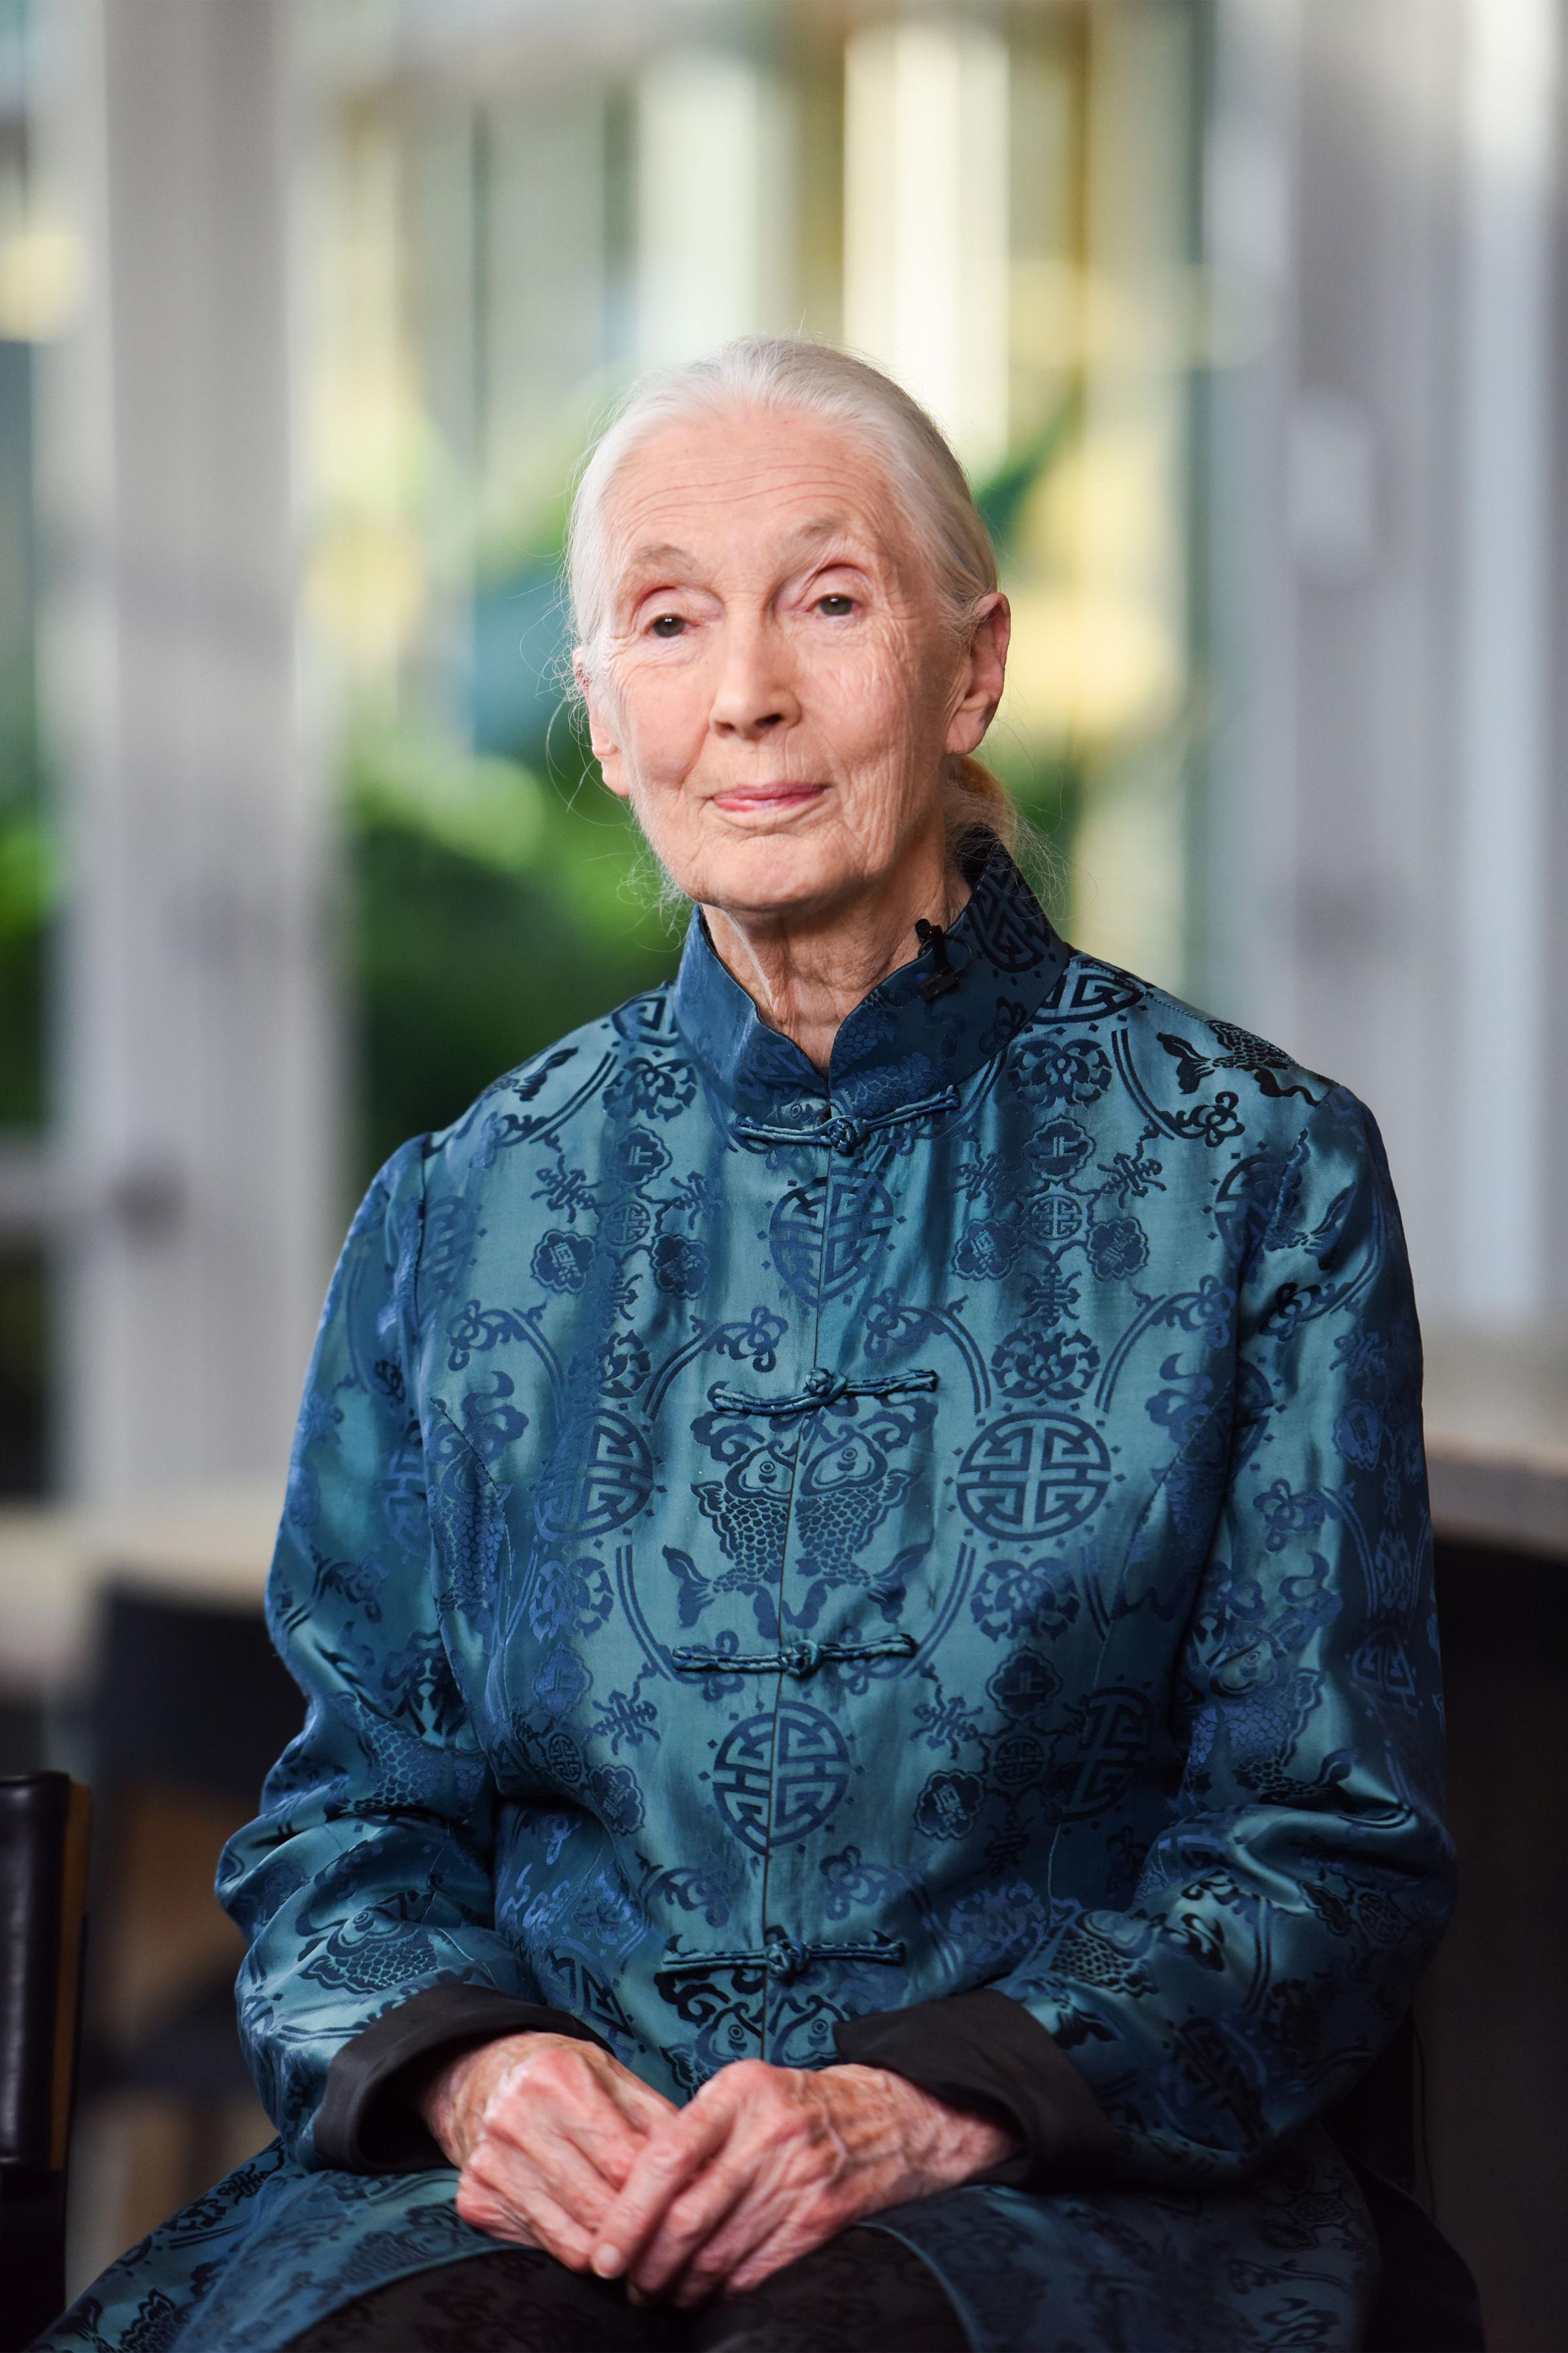 Jane Goodall innovators-on-geniuses-goodall